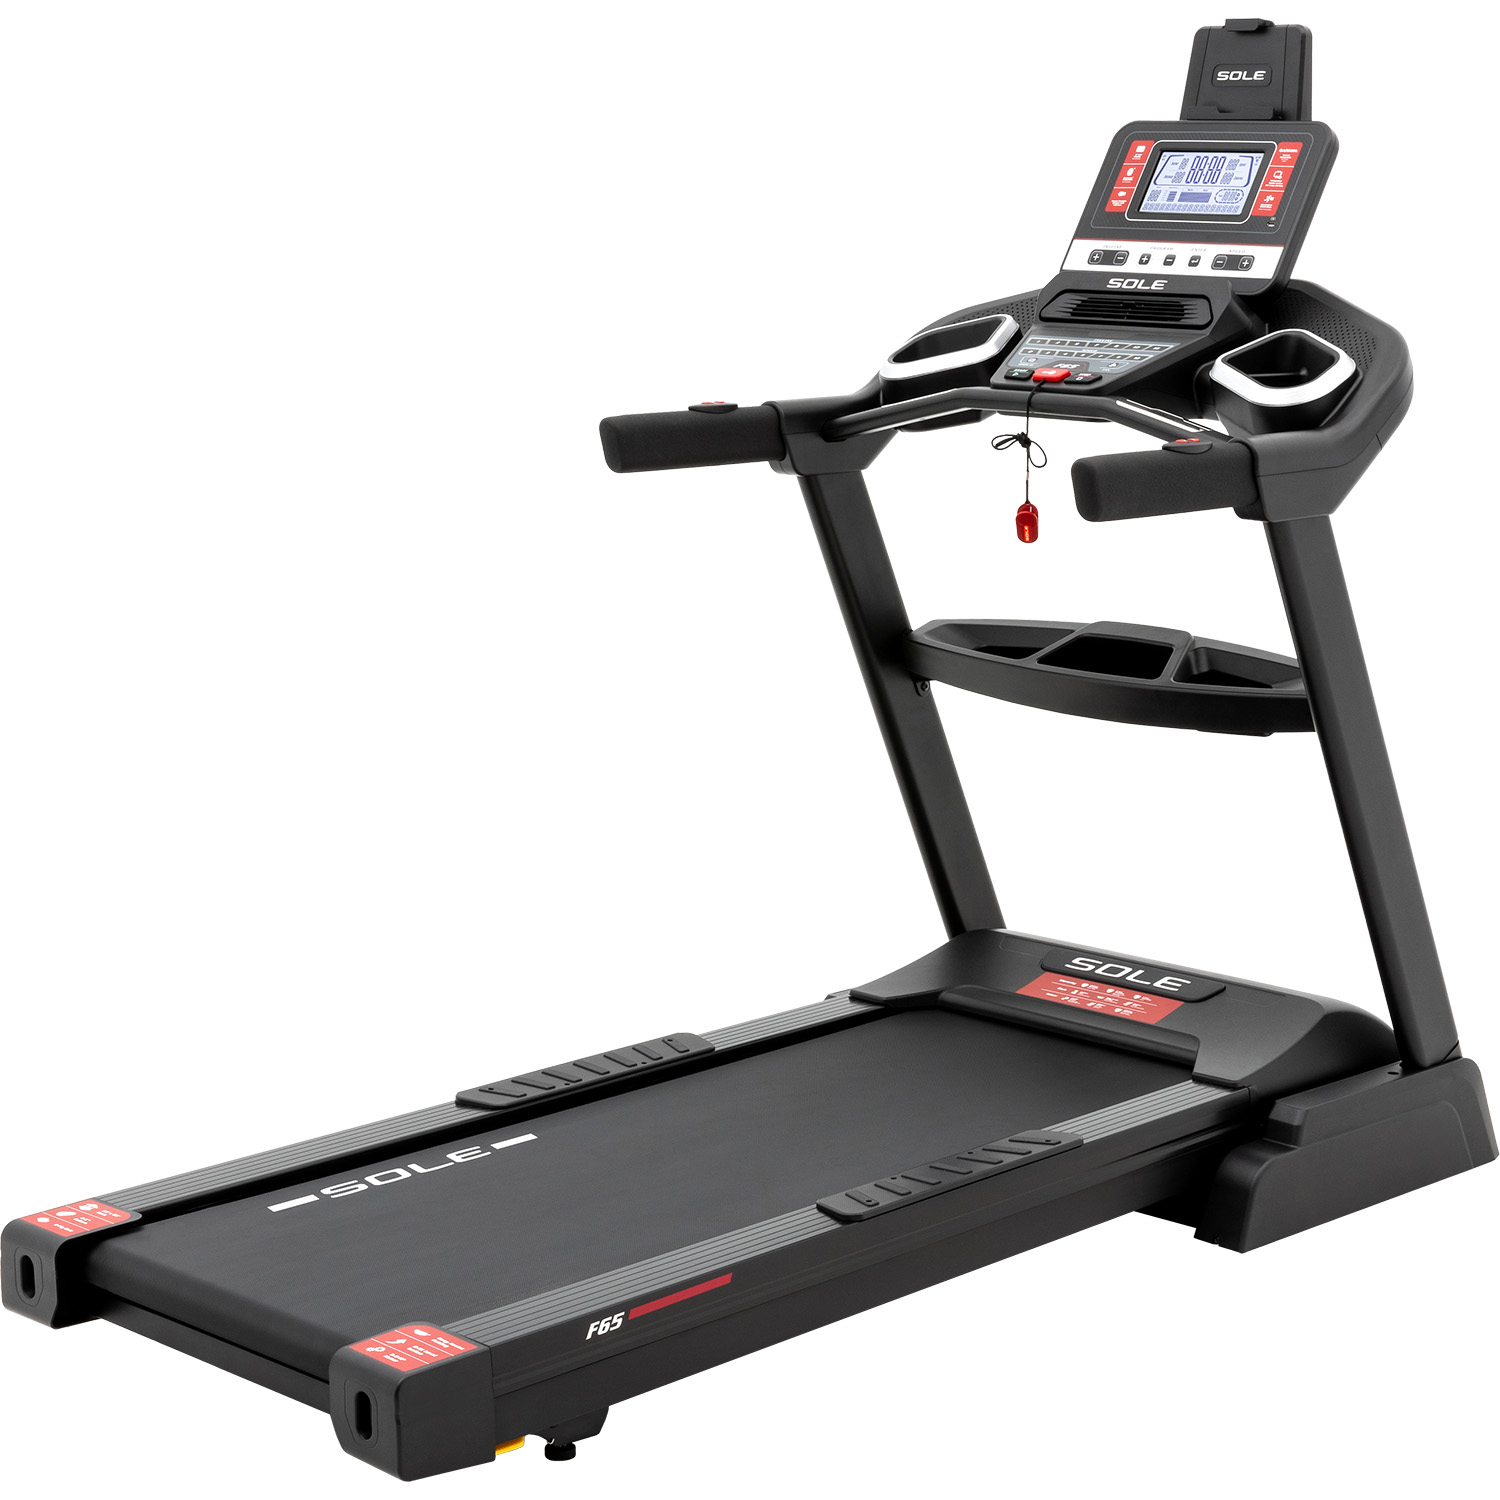 16008300650-SOLE-F65-Treadmill_PO1